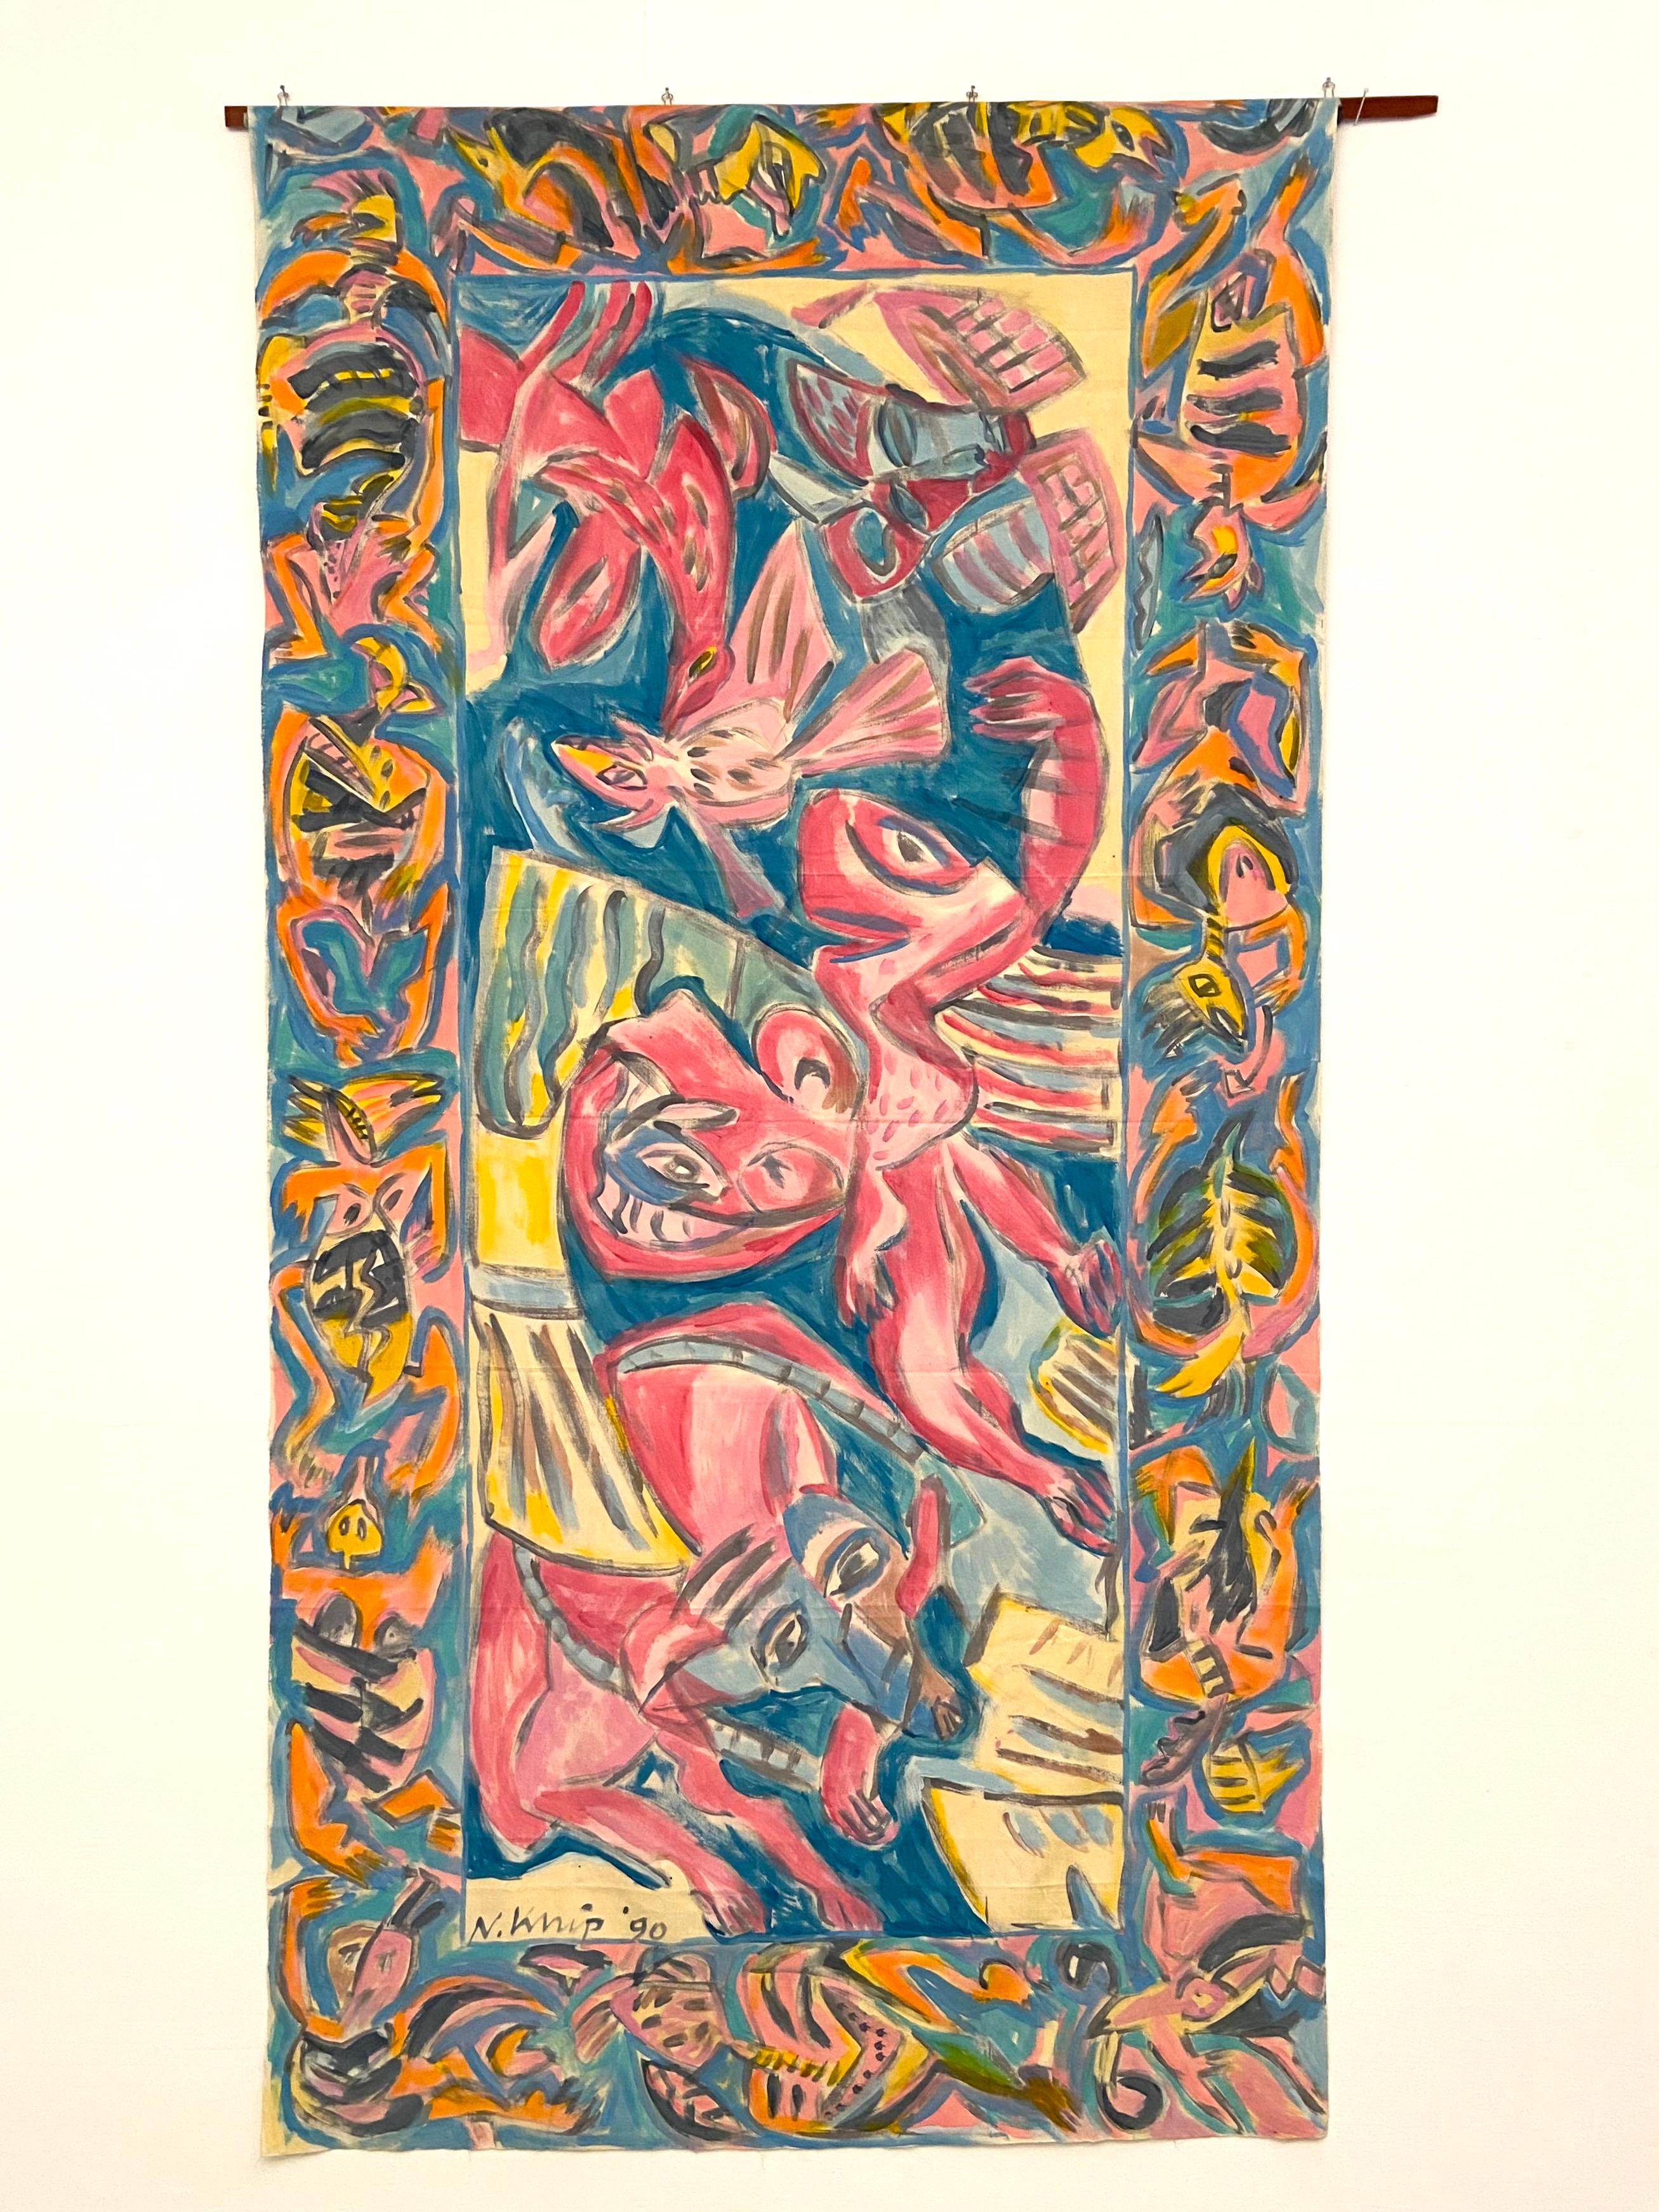 Buntes und verspieltes Gemälde von Noor Knip in Acryl auf Leinwand, 1990.

Wir lieben die Arbeiten von Noor Knip und freuen uns sehr, dass im letzten Jahr so viele der Schwarz-Weiß-Bilder verkauft wurden. Diese neue Serie mit viel mehr Farben der